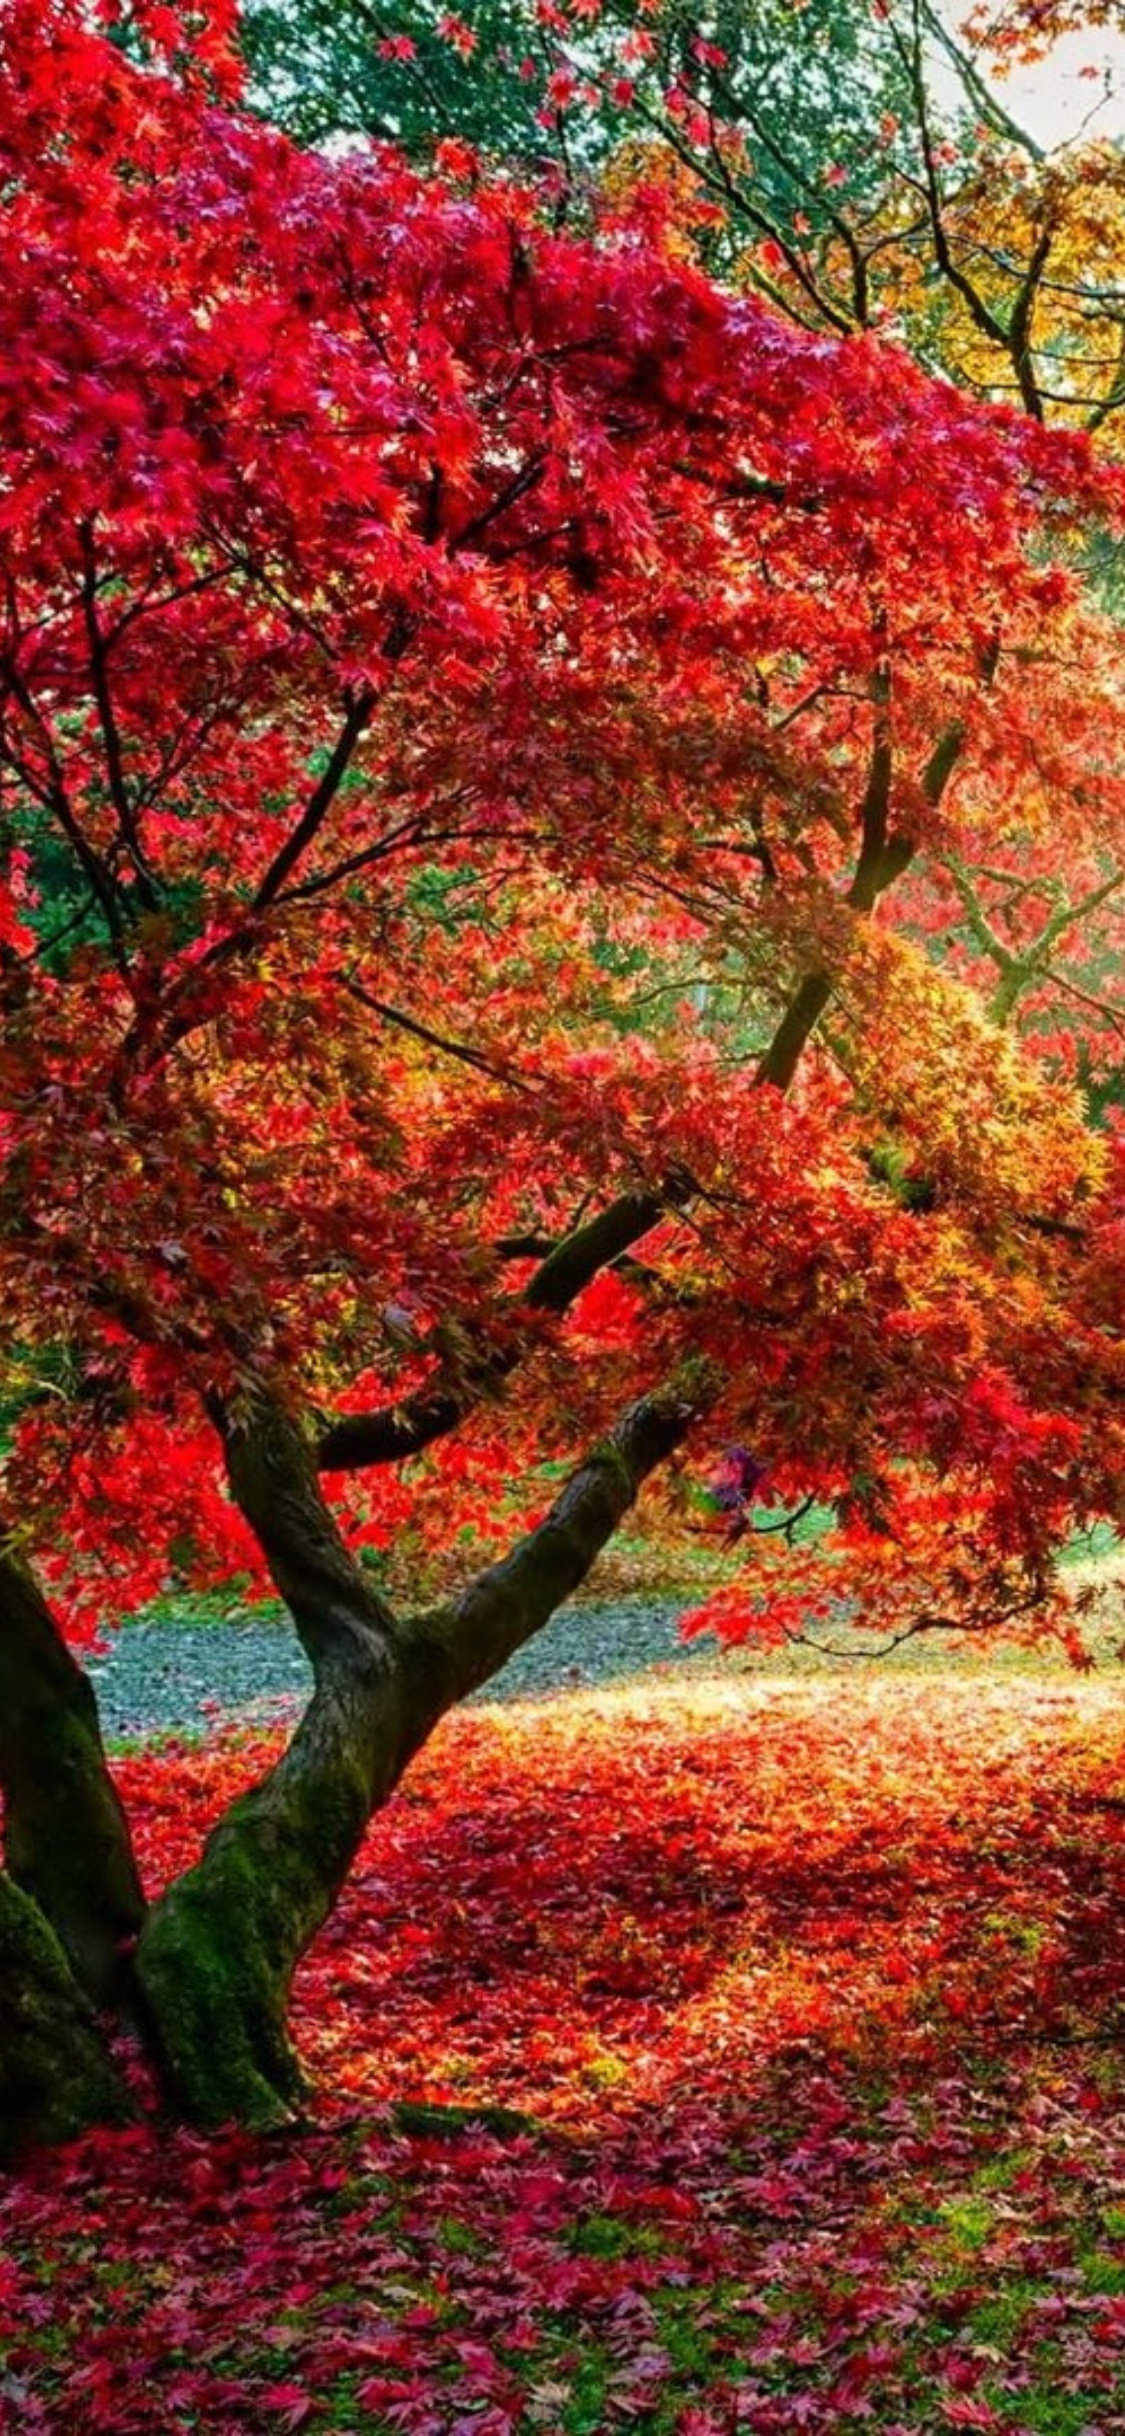 美しい紅葉の無料高画質スマホ壁紙24枚 エモい スマホ壁紙辞典